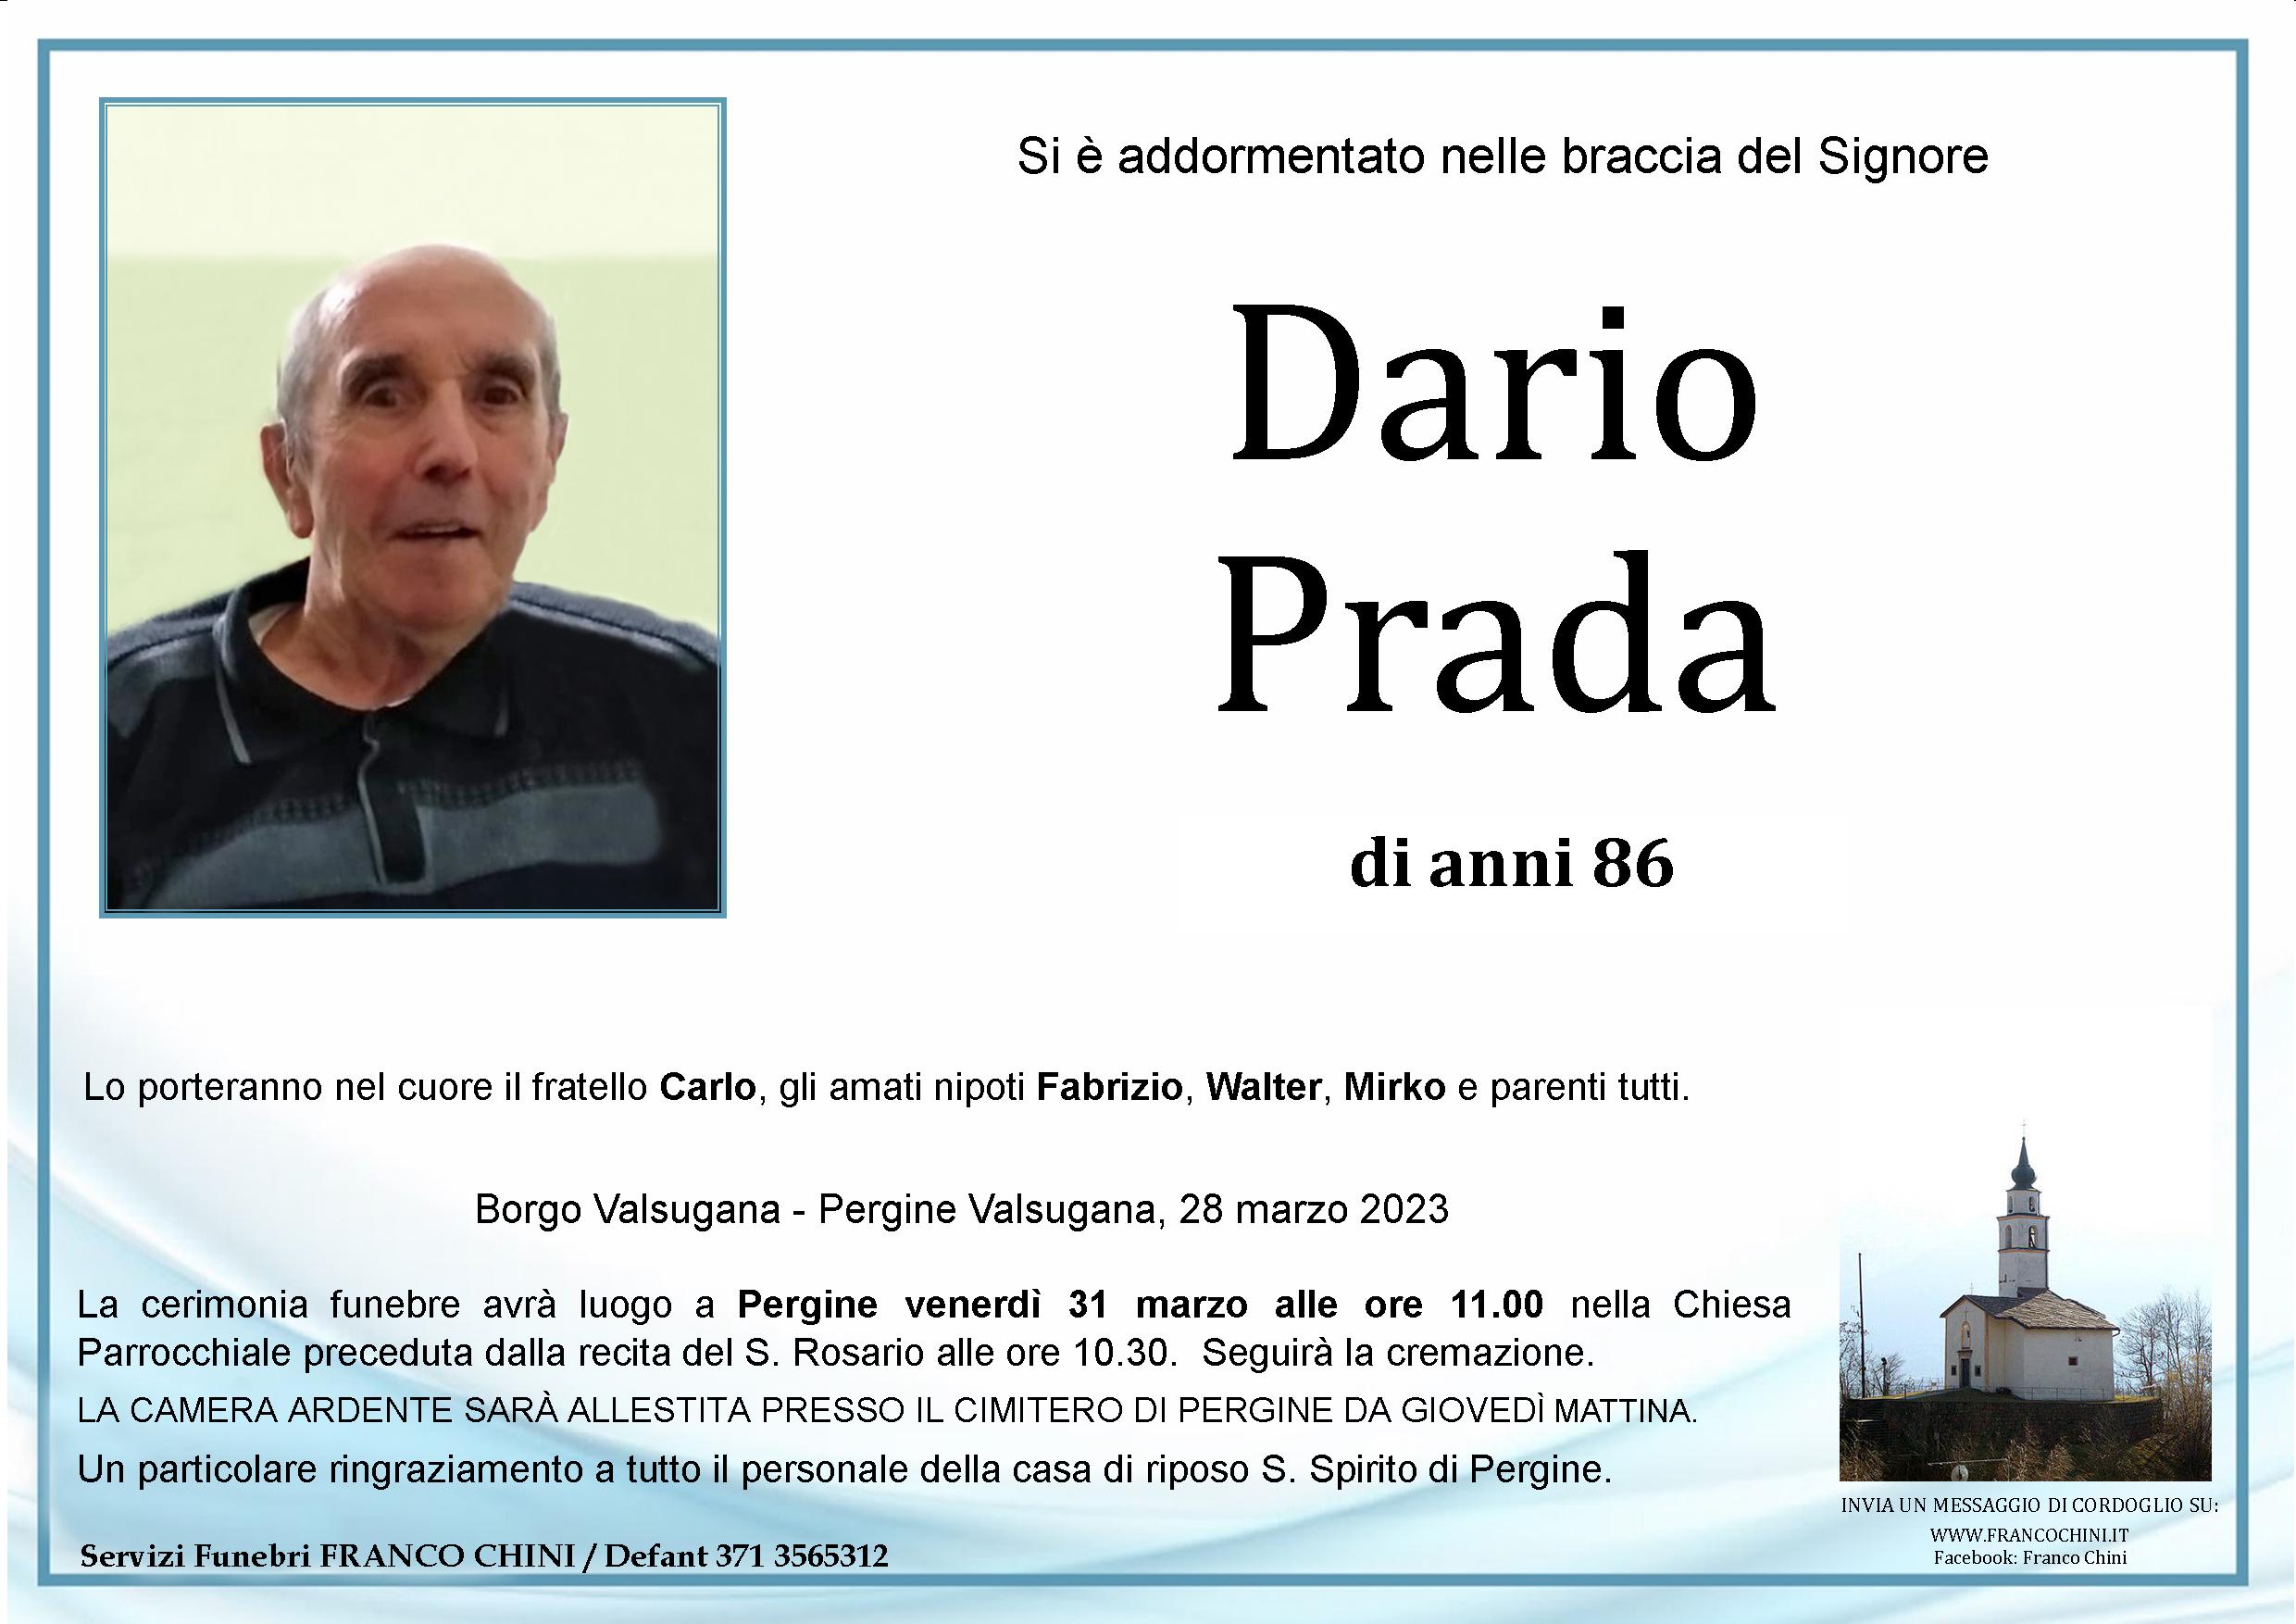 Dario Prada